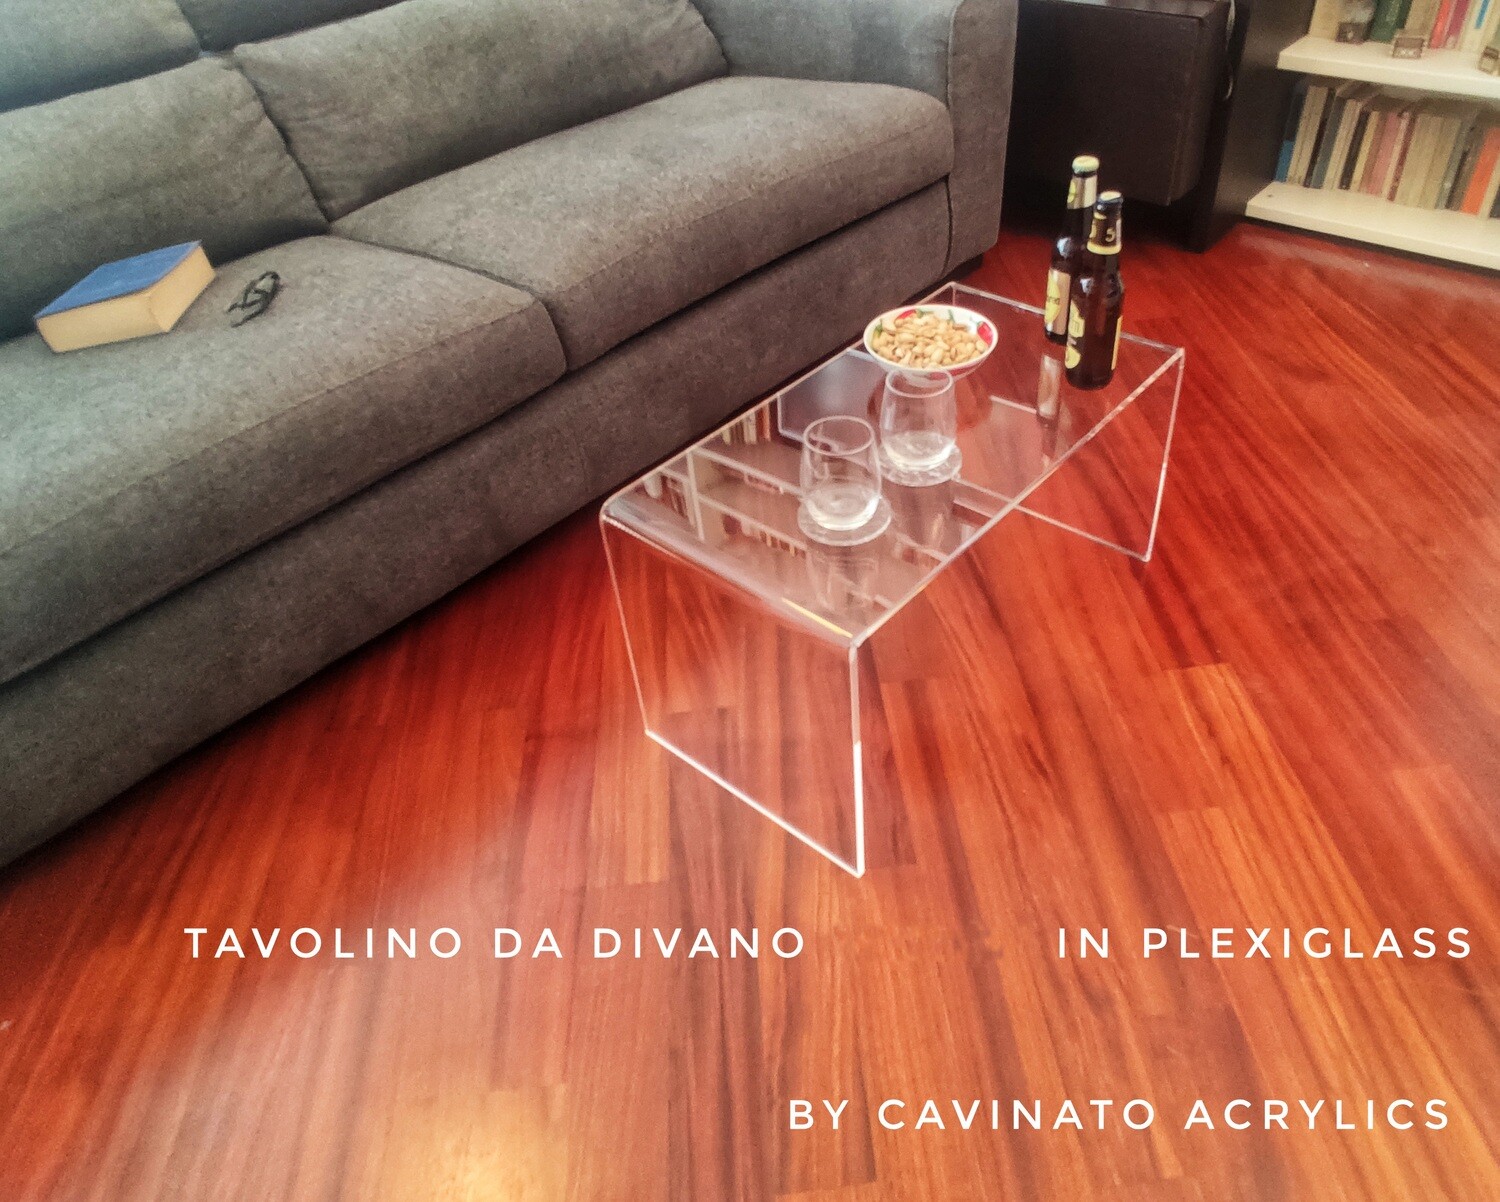 Cavinato acrylics - Tavolino da divano "STREAM" in plexiglass trasparente. Spessore 1 cm. Made in ITALY (70x35xH. 35)